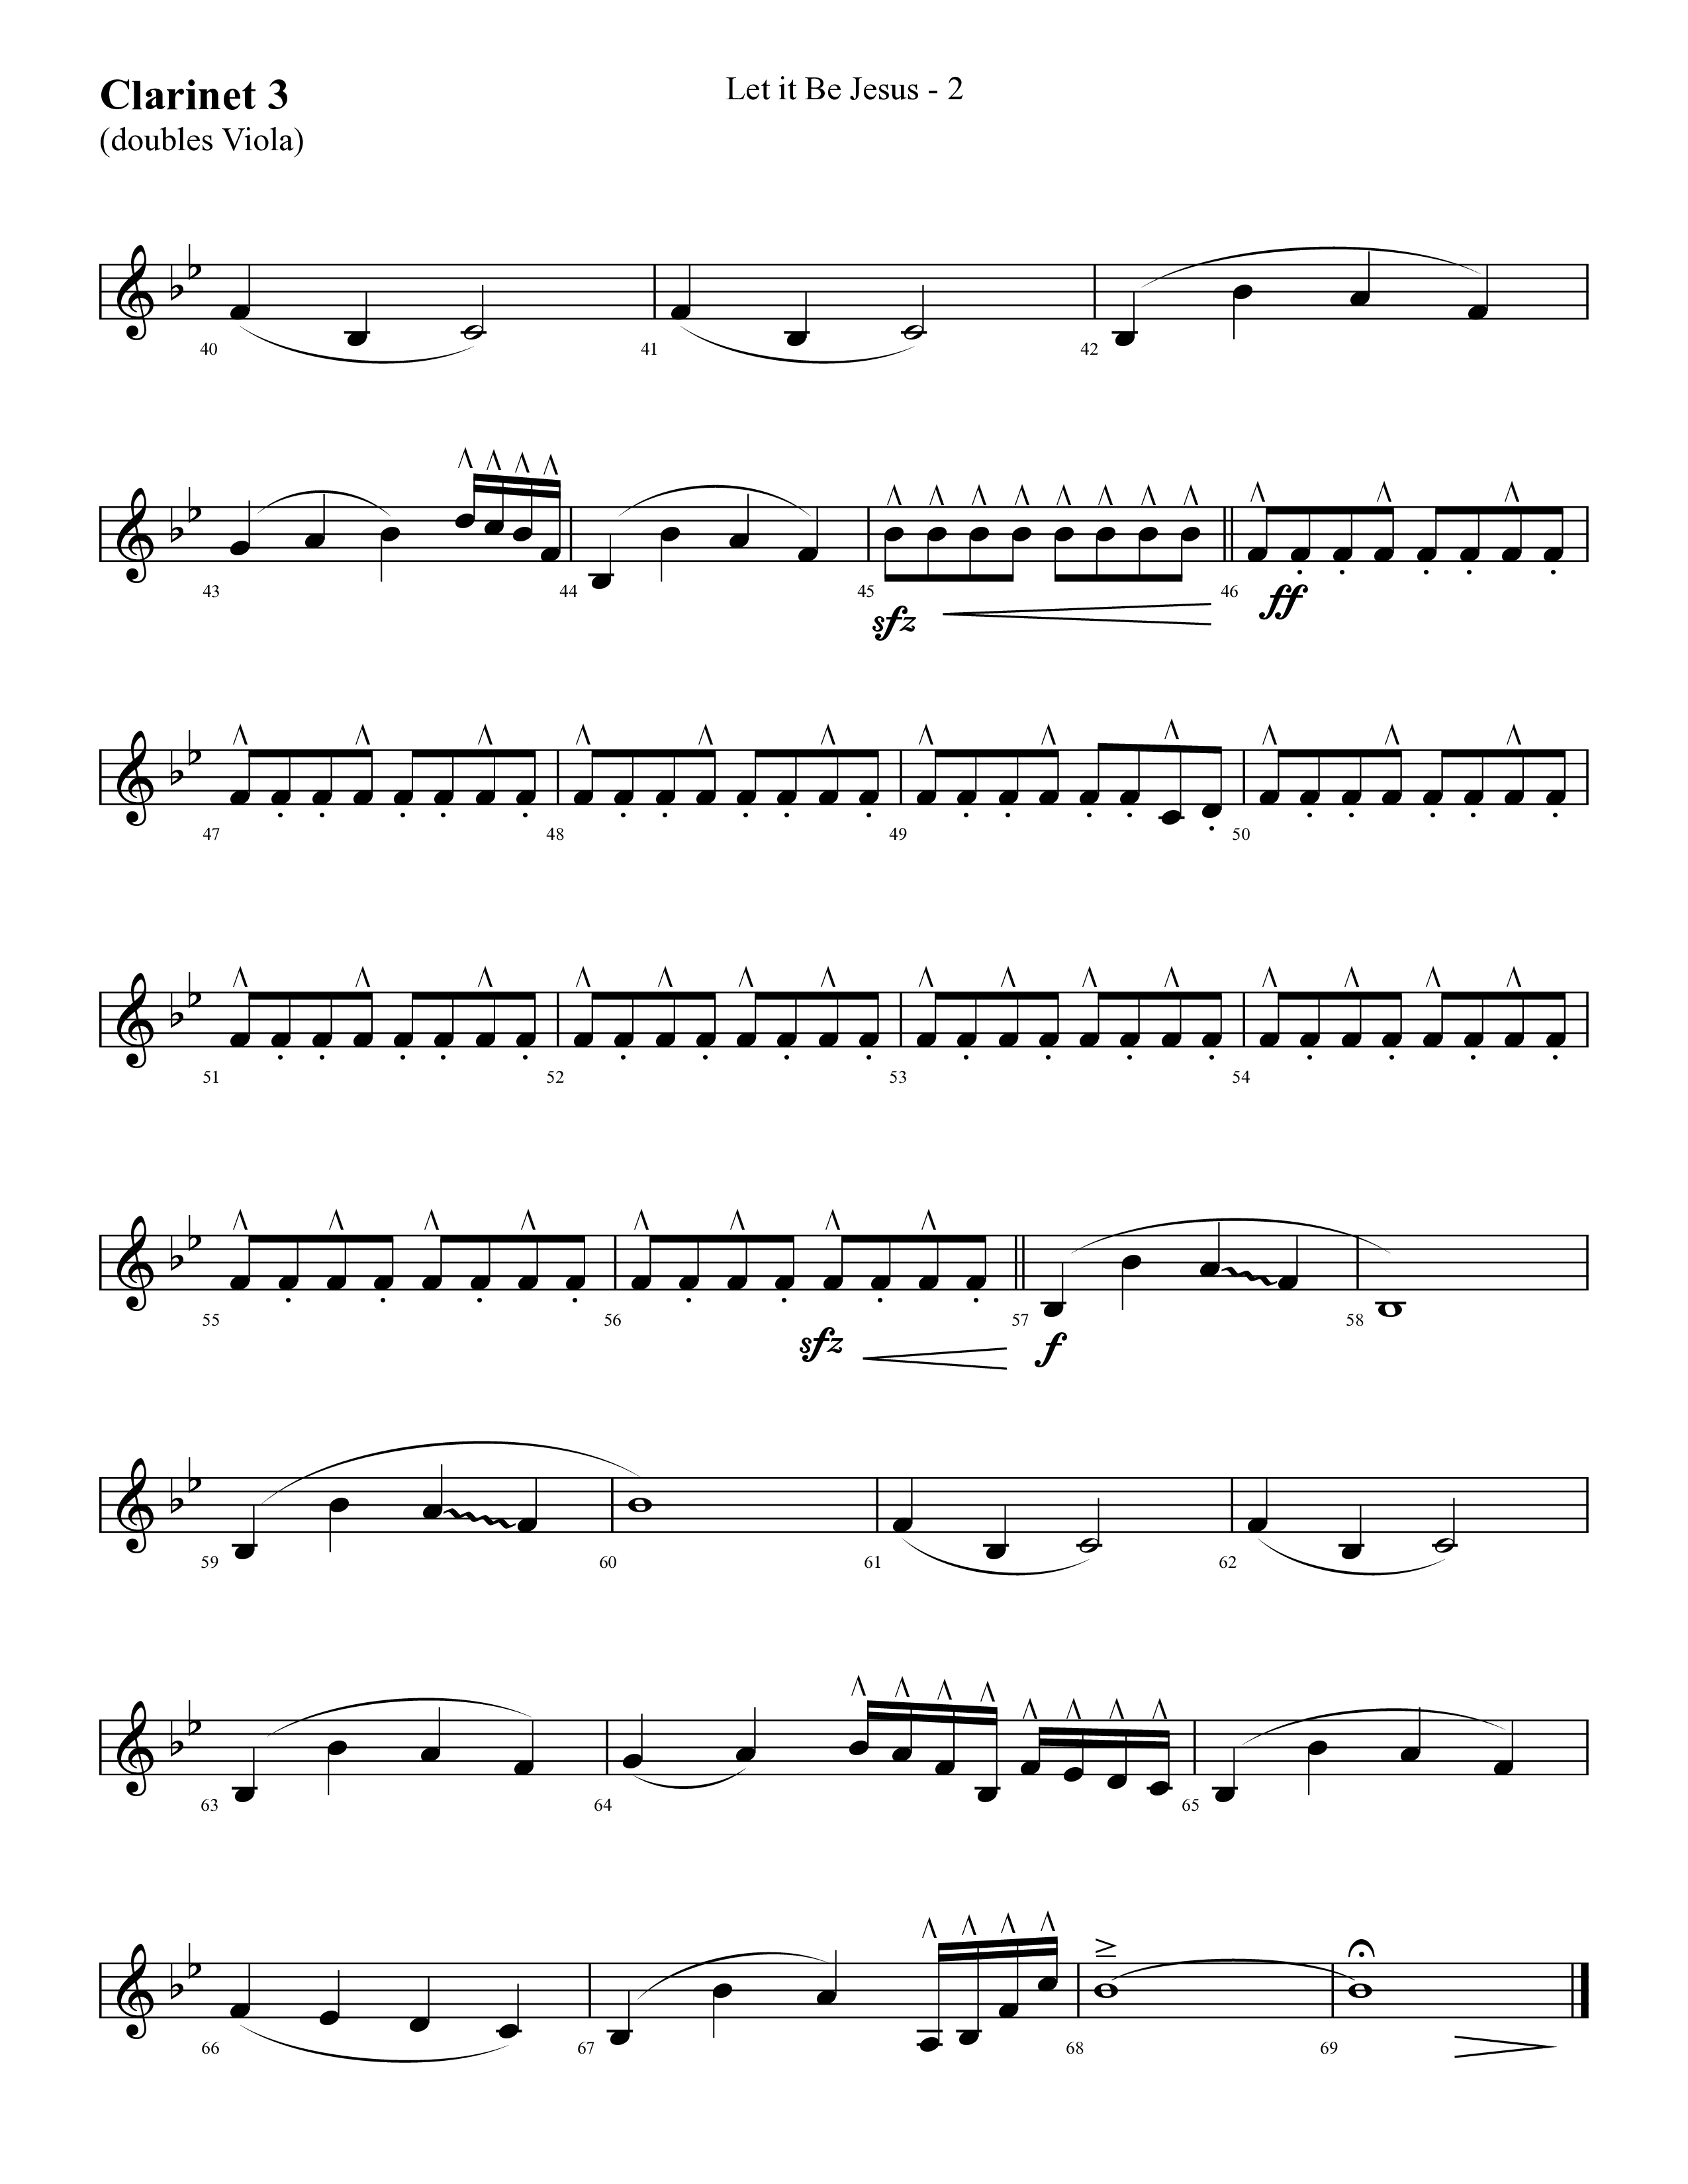 Let It Be Jesus (Choral Anthem SATB) Clarinet 3 (Lifeway Choral / Arr. Cliff Duren)